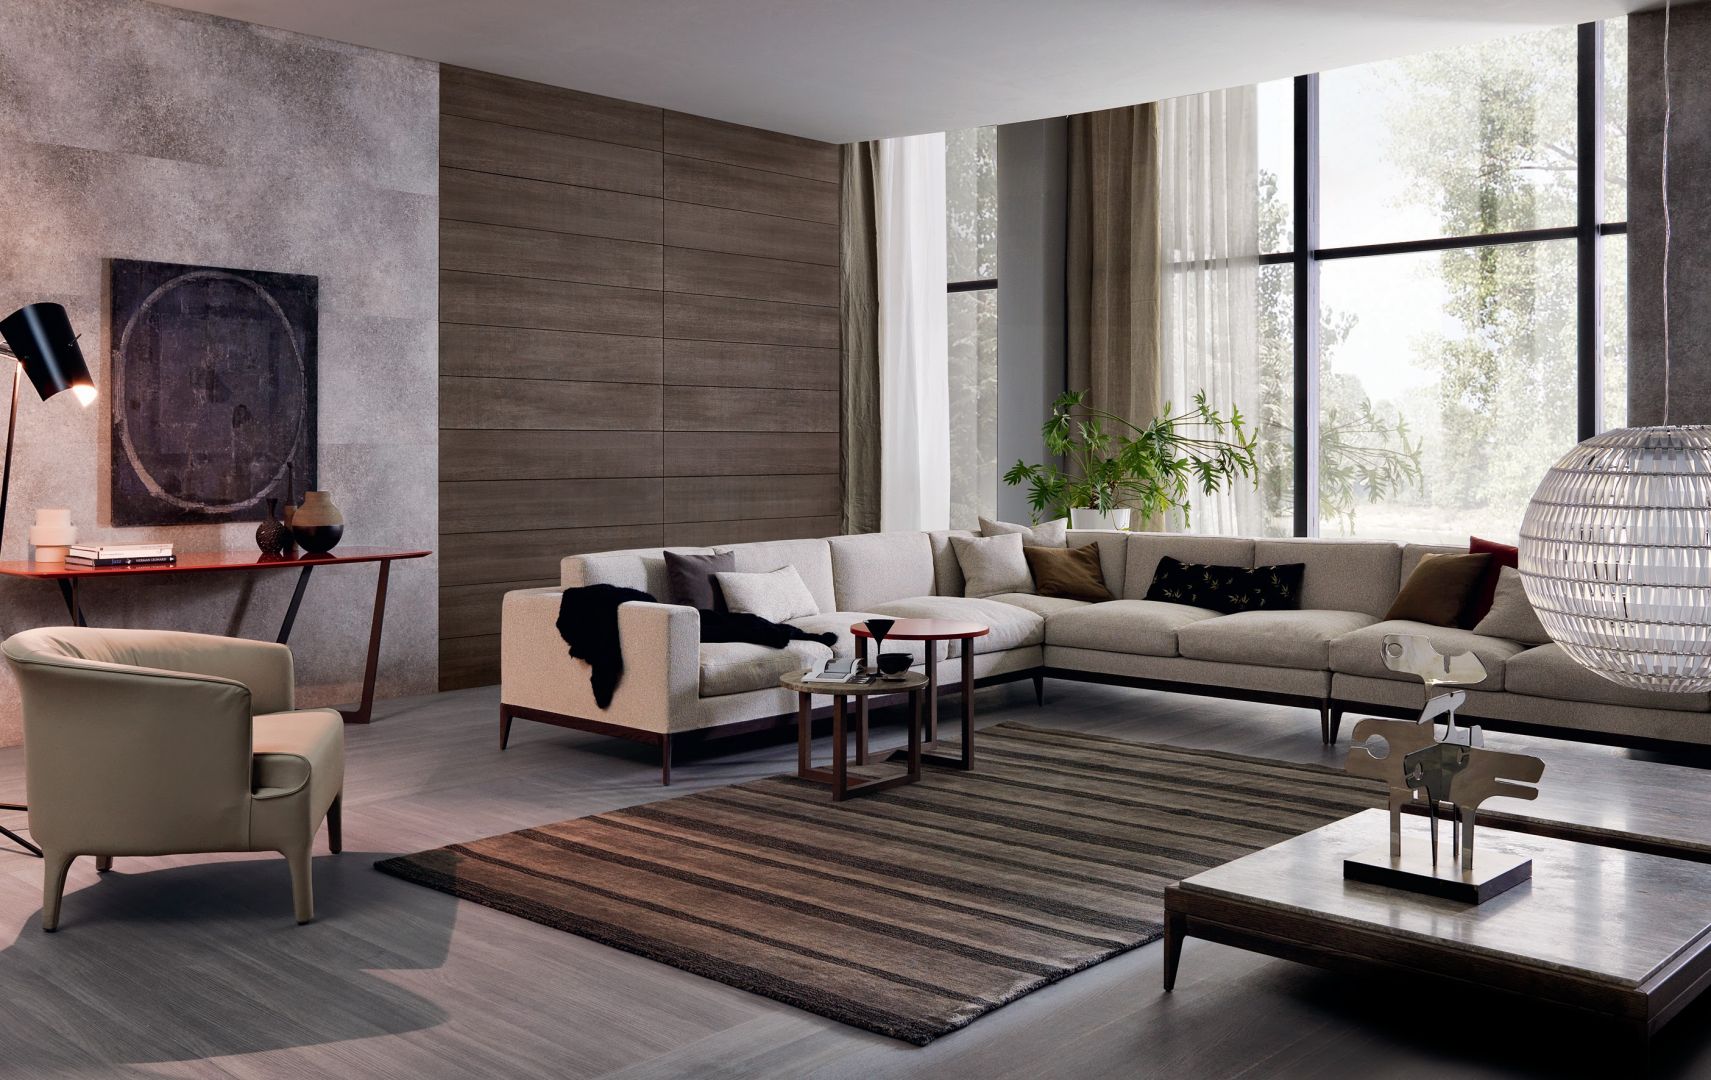 Biała sofa prezentuje się doskonale także w klasycznych aranżacjach. Biały kolor jest na tyle uniwersalny, że można go stosować do każdego stylu wnętrza. Fot. Misura